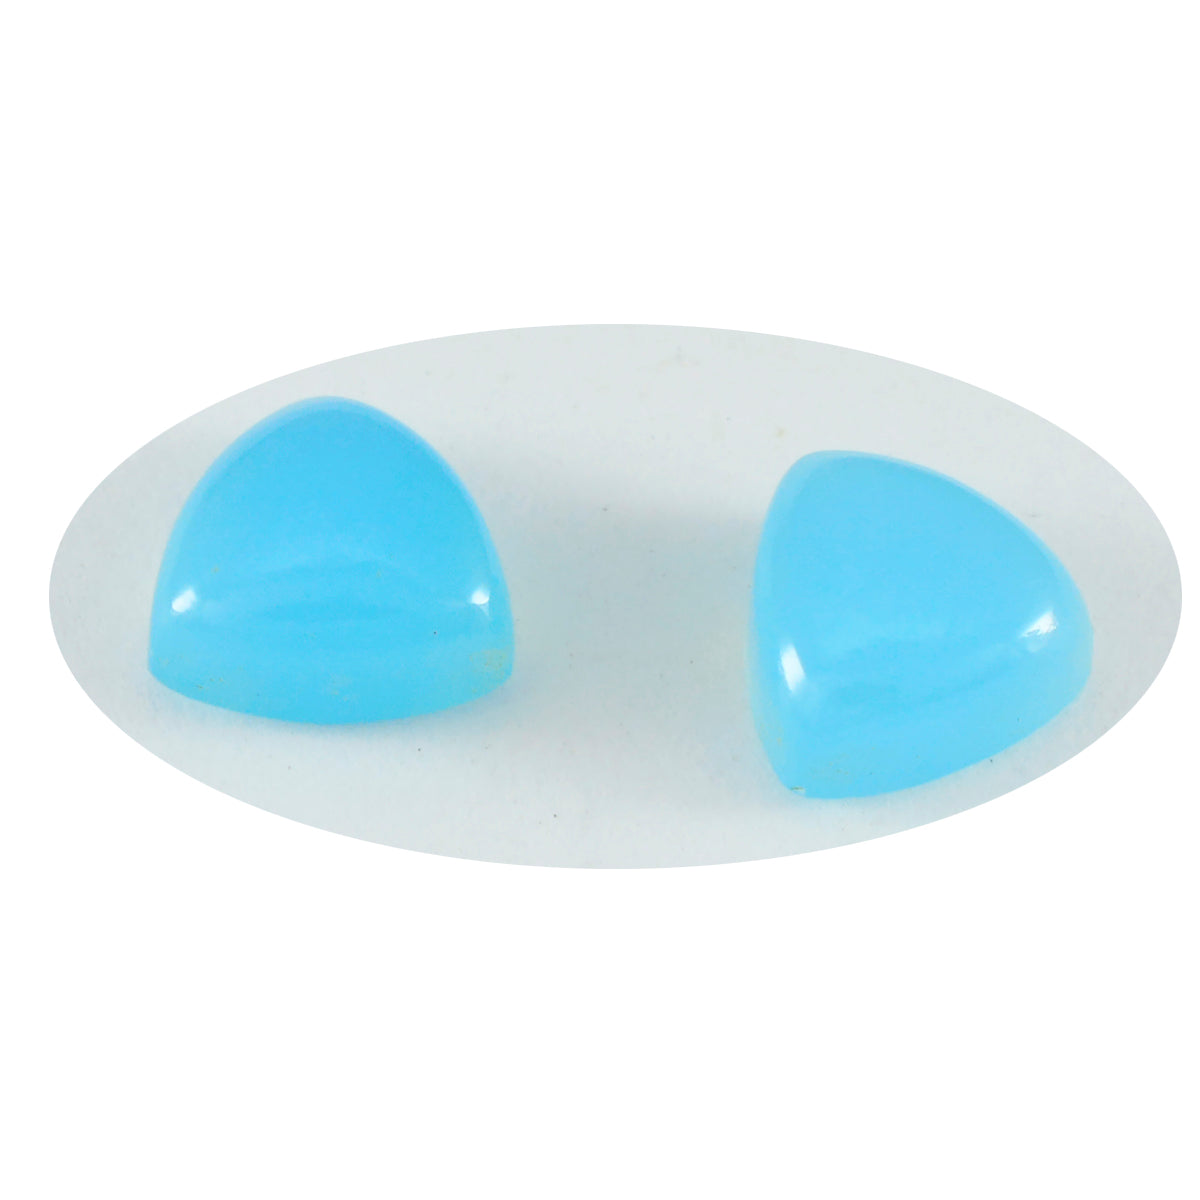 Riyogems 1 pieza cabujón de calcedonia azul 5x5 mm forma de trillón piedra preciosa de excelente calidad